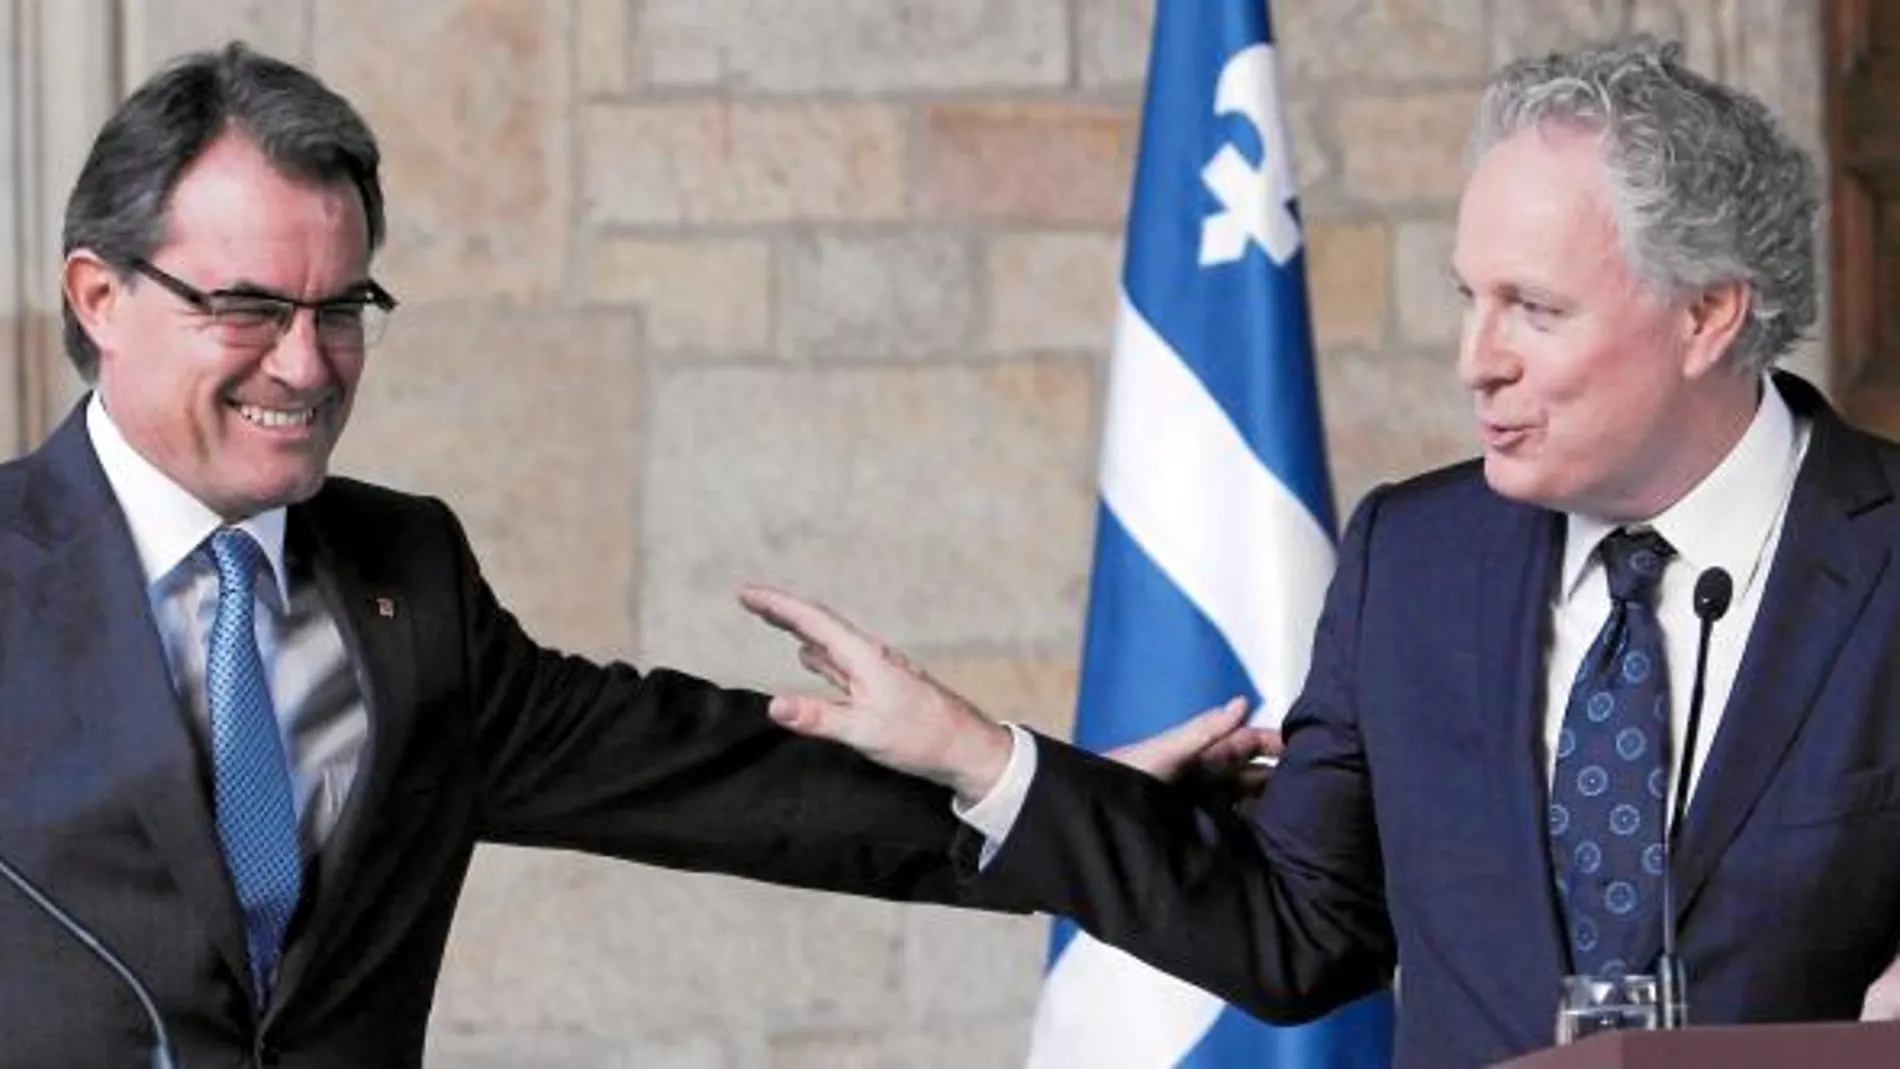 Mas tuvo gestos de complicidad con el primer ministro del Quebec, de quien envidia su pacto fiscal